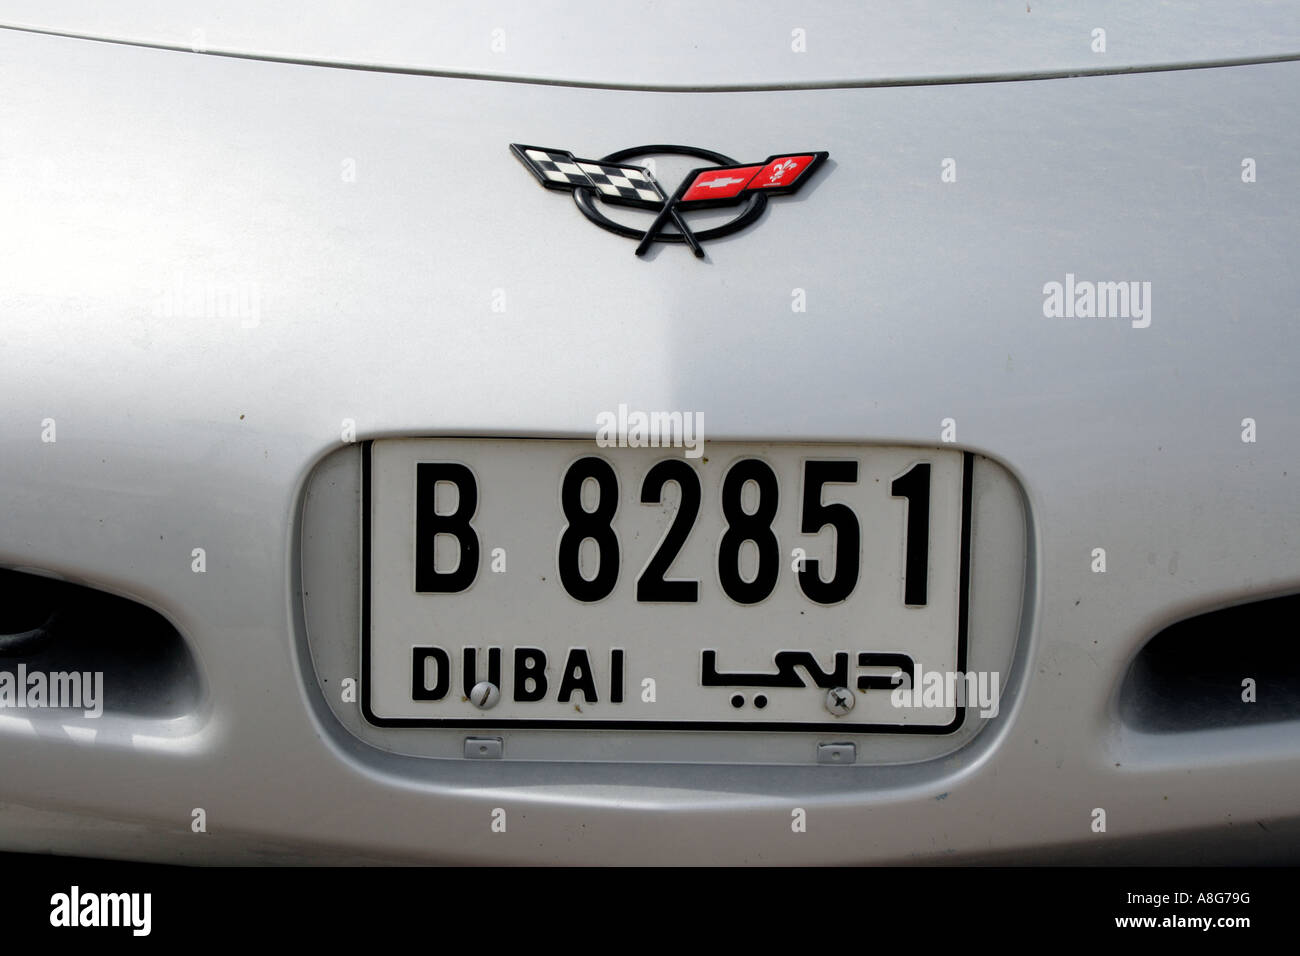 Corvette Sportwagen mit Dubai Lizenz Nummernschild, Vereinigte Arabische Emirate. Foto: Willy Matheisl Stockfoto